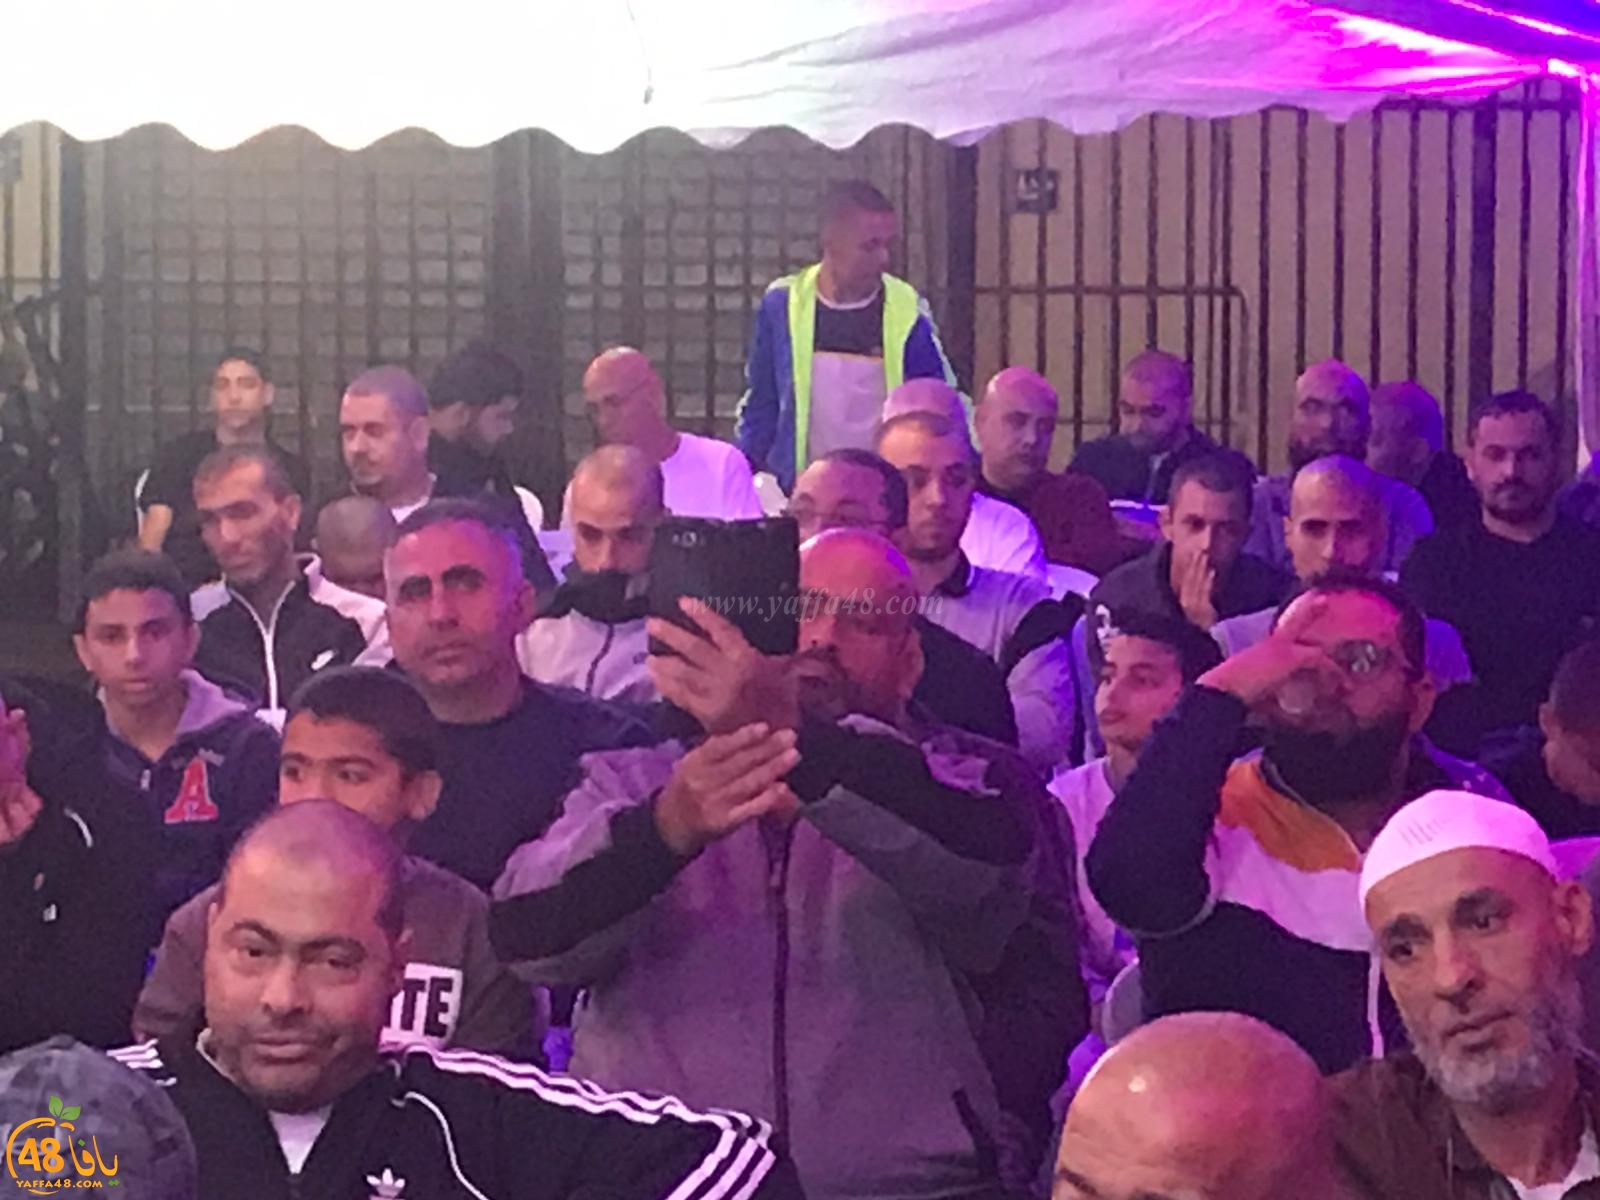 فيديو: خيمة الهدى الدعويّة تستضيف الدكتور رائد فتحي في يافا